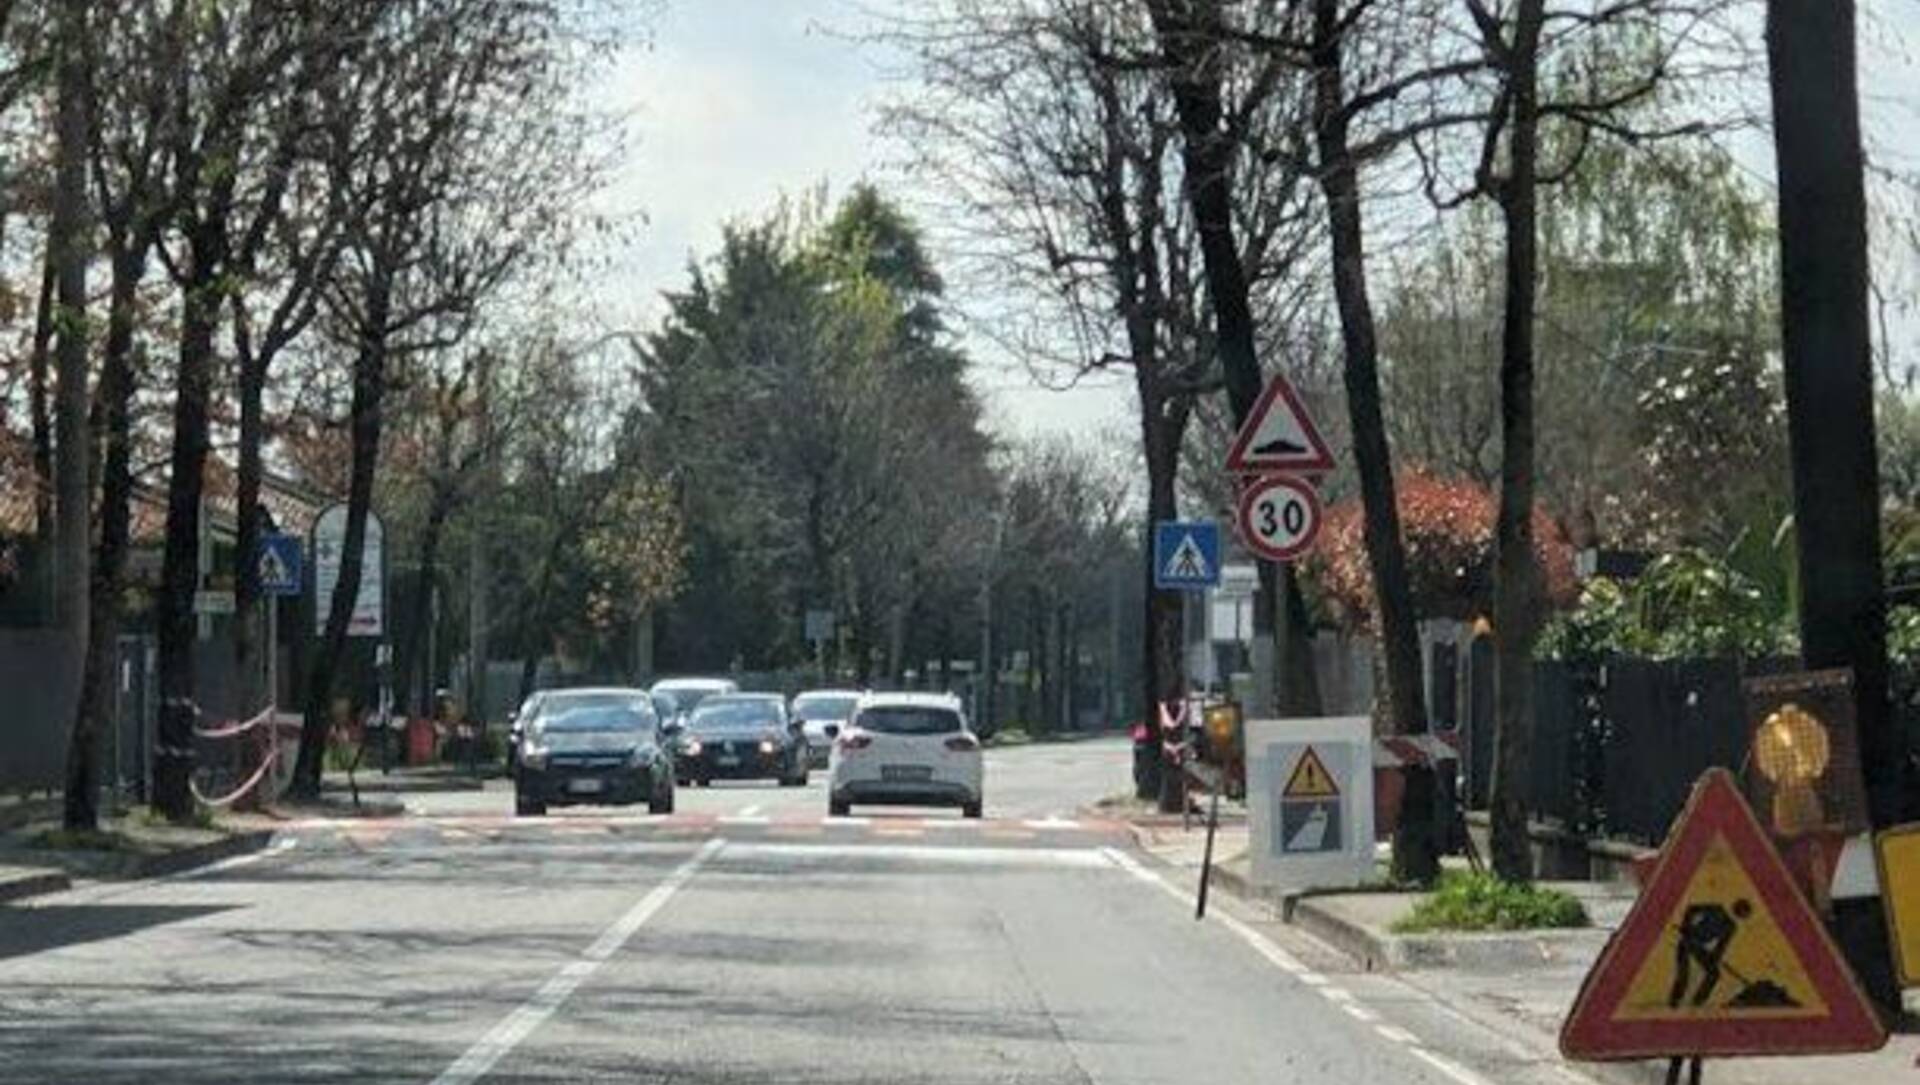 Saronno, arriverà il terzo attraversamento pedonale nell’asse via Miola/via Piave